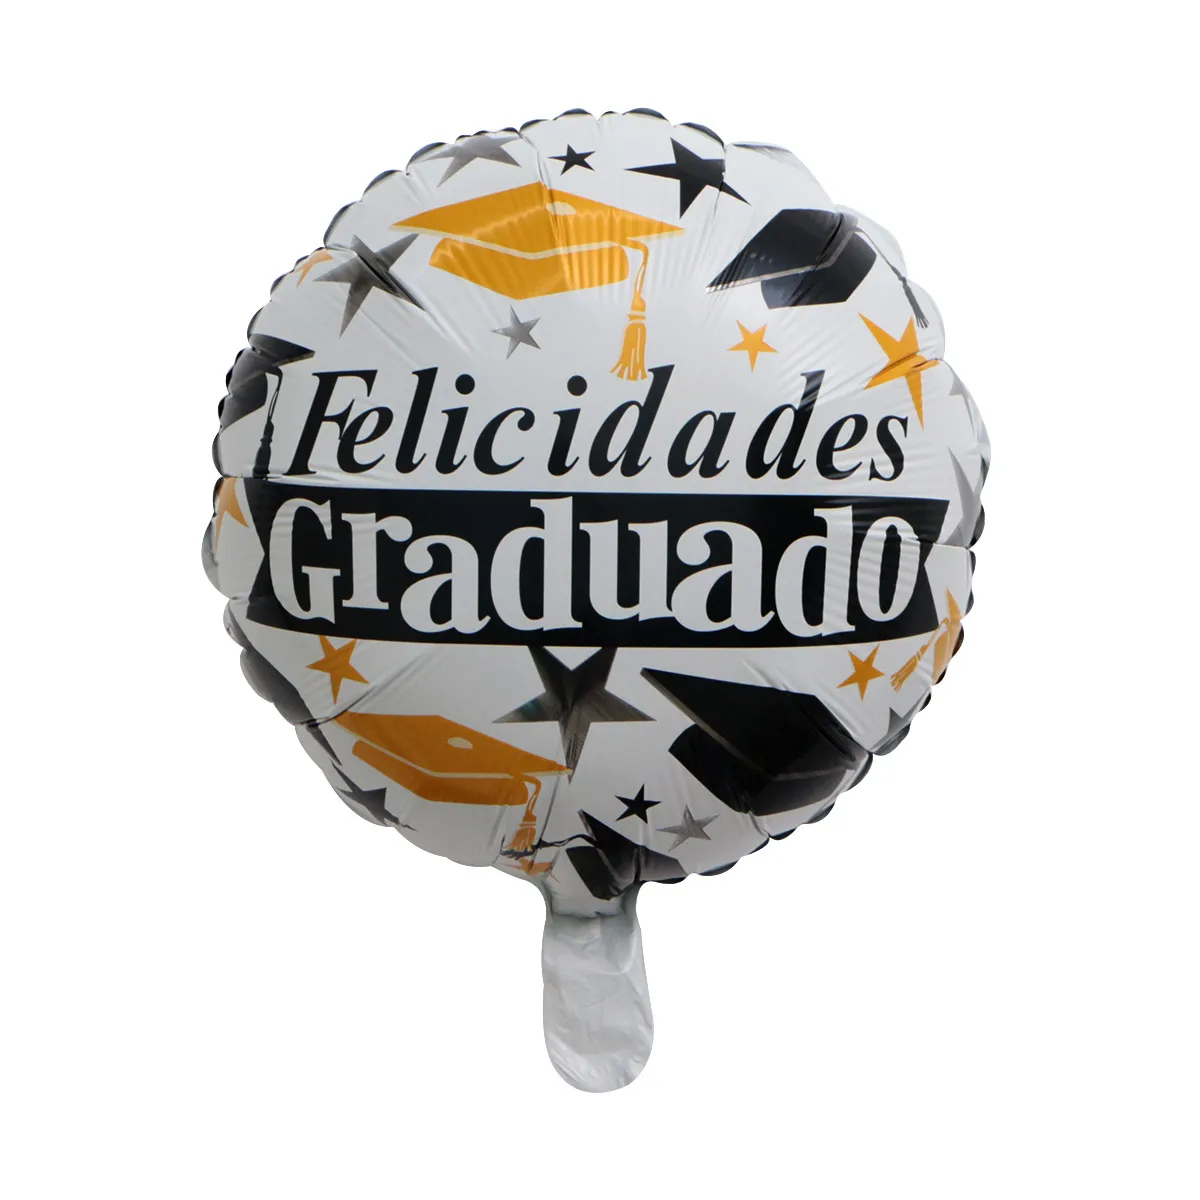 50 teile/los Herzlichen Glückwunsch Grad Luftballons Abschluss 2020 Folienballons Abschluss Geschenk Globos Zurück zur Schule Dekorationen Geburtstag Party206E